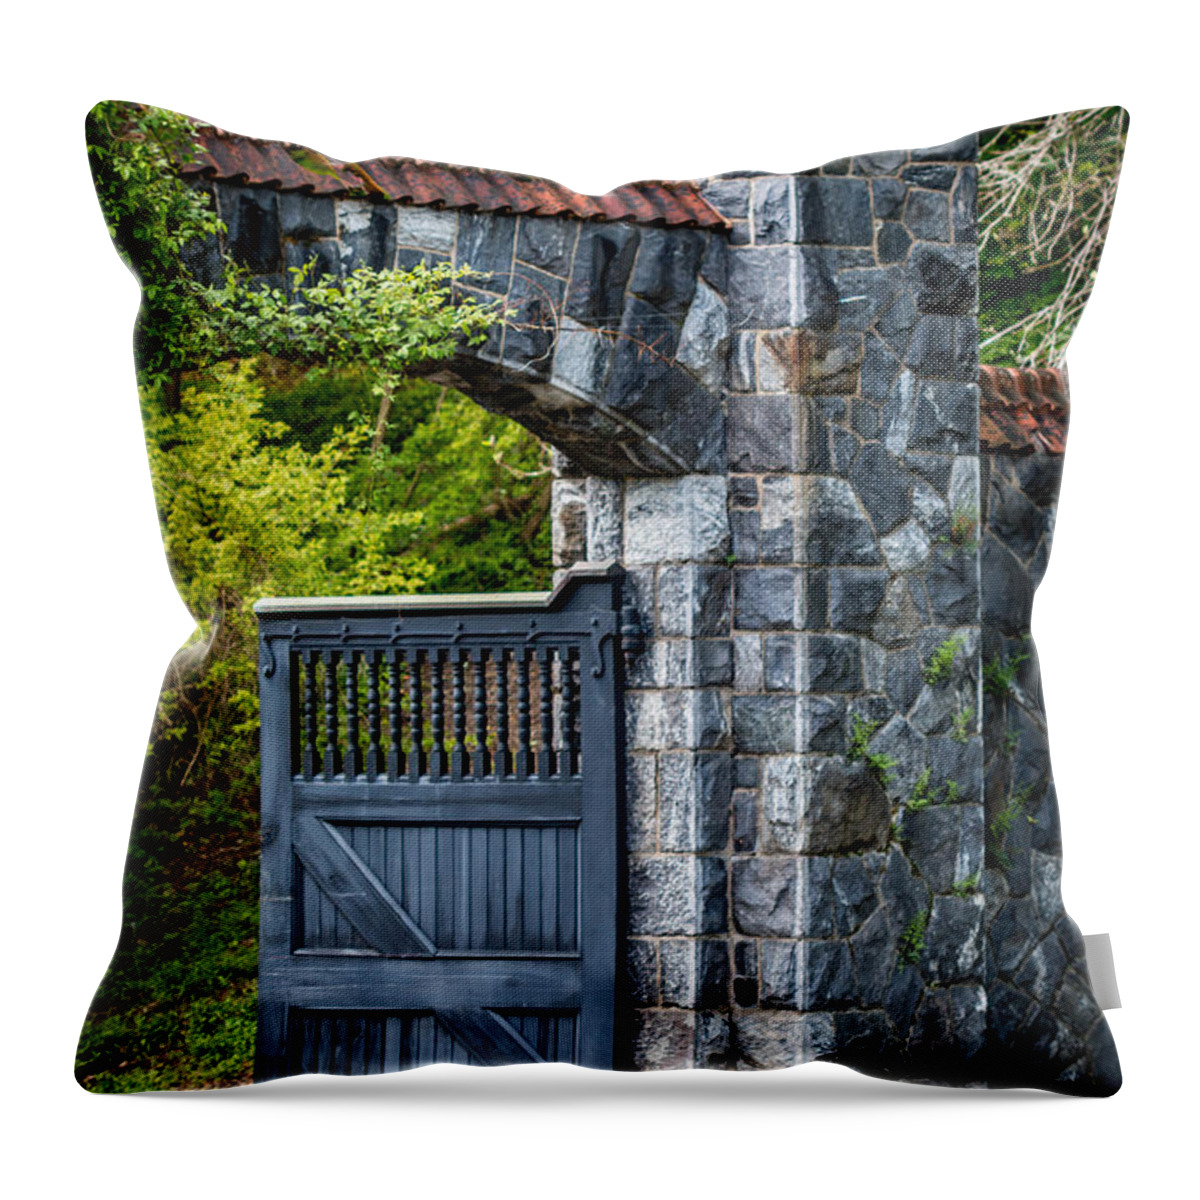 Garden Throw Pillow featuring the photograph Garden Portal by Susie Weaver